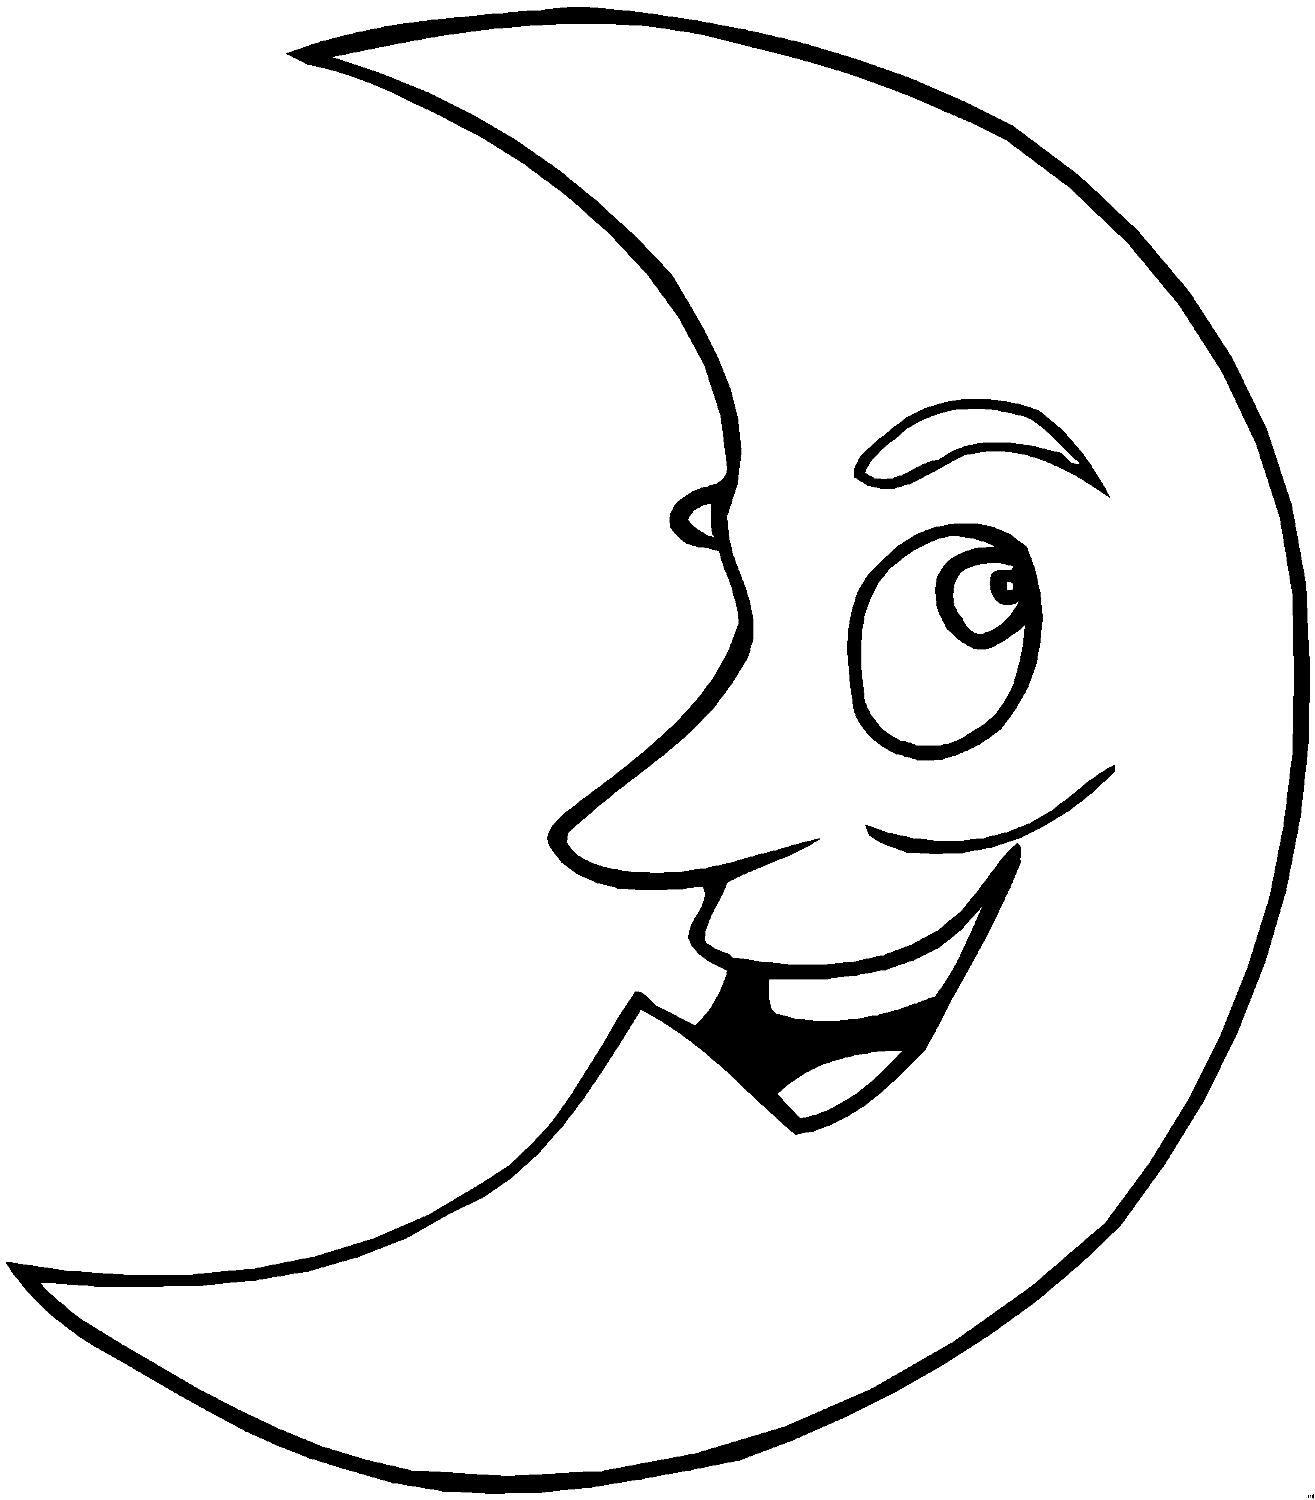 Luna sonriente de la luna